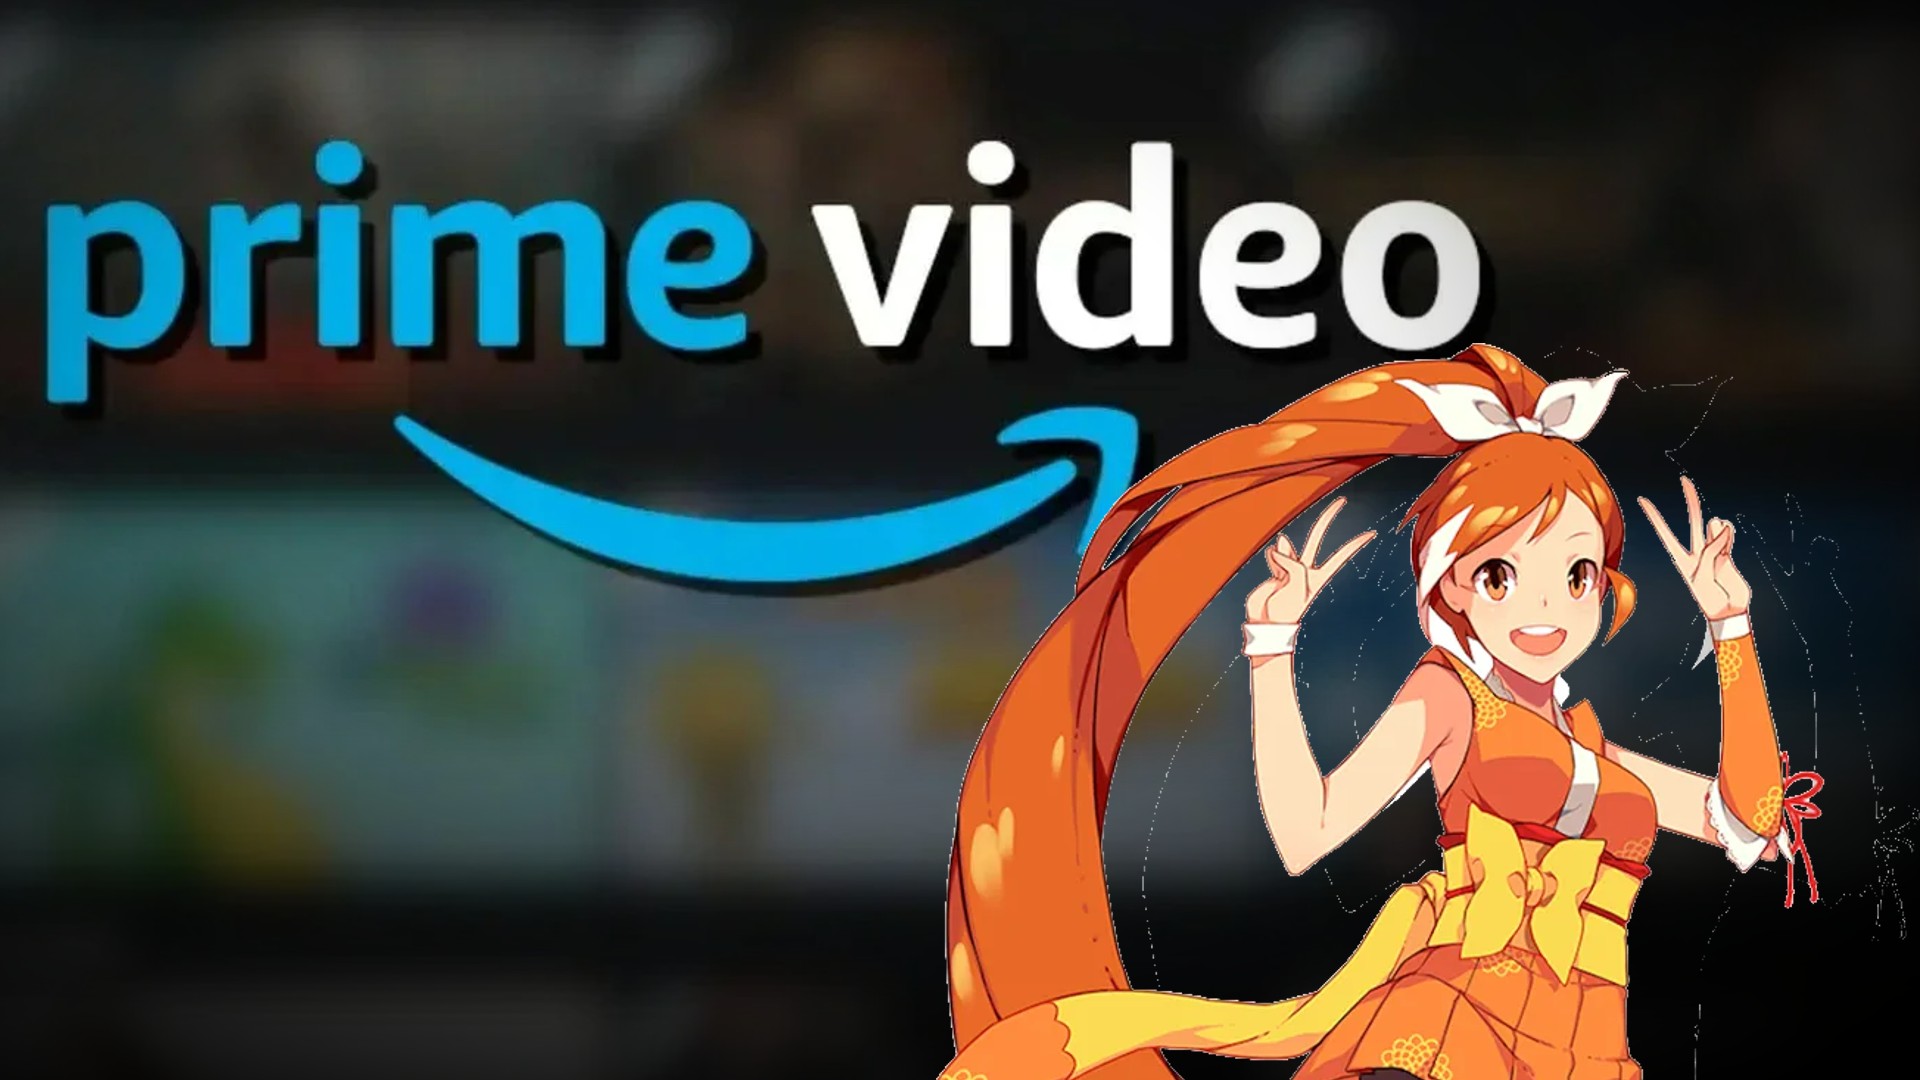 Imagem mescla o banner do Amazon Prime Video com a mascote do Crunchyroll